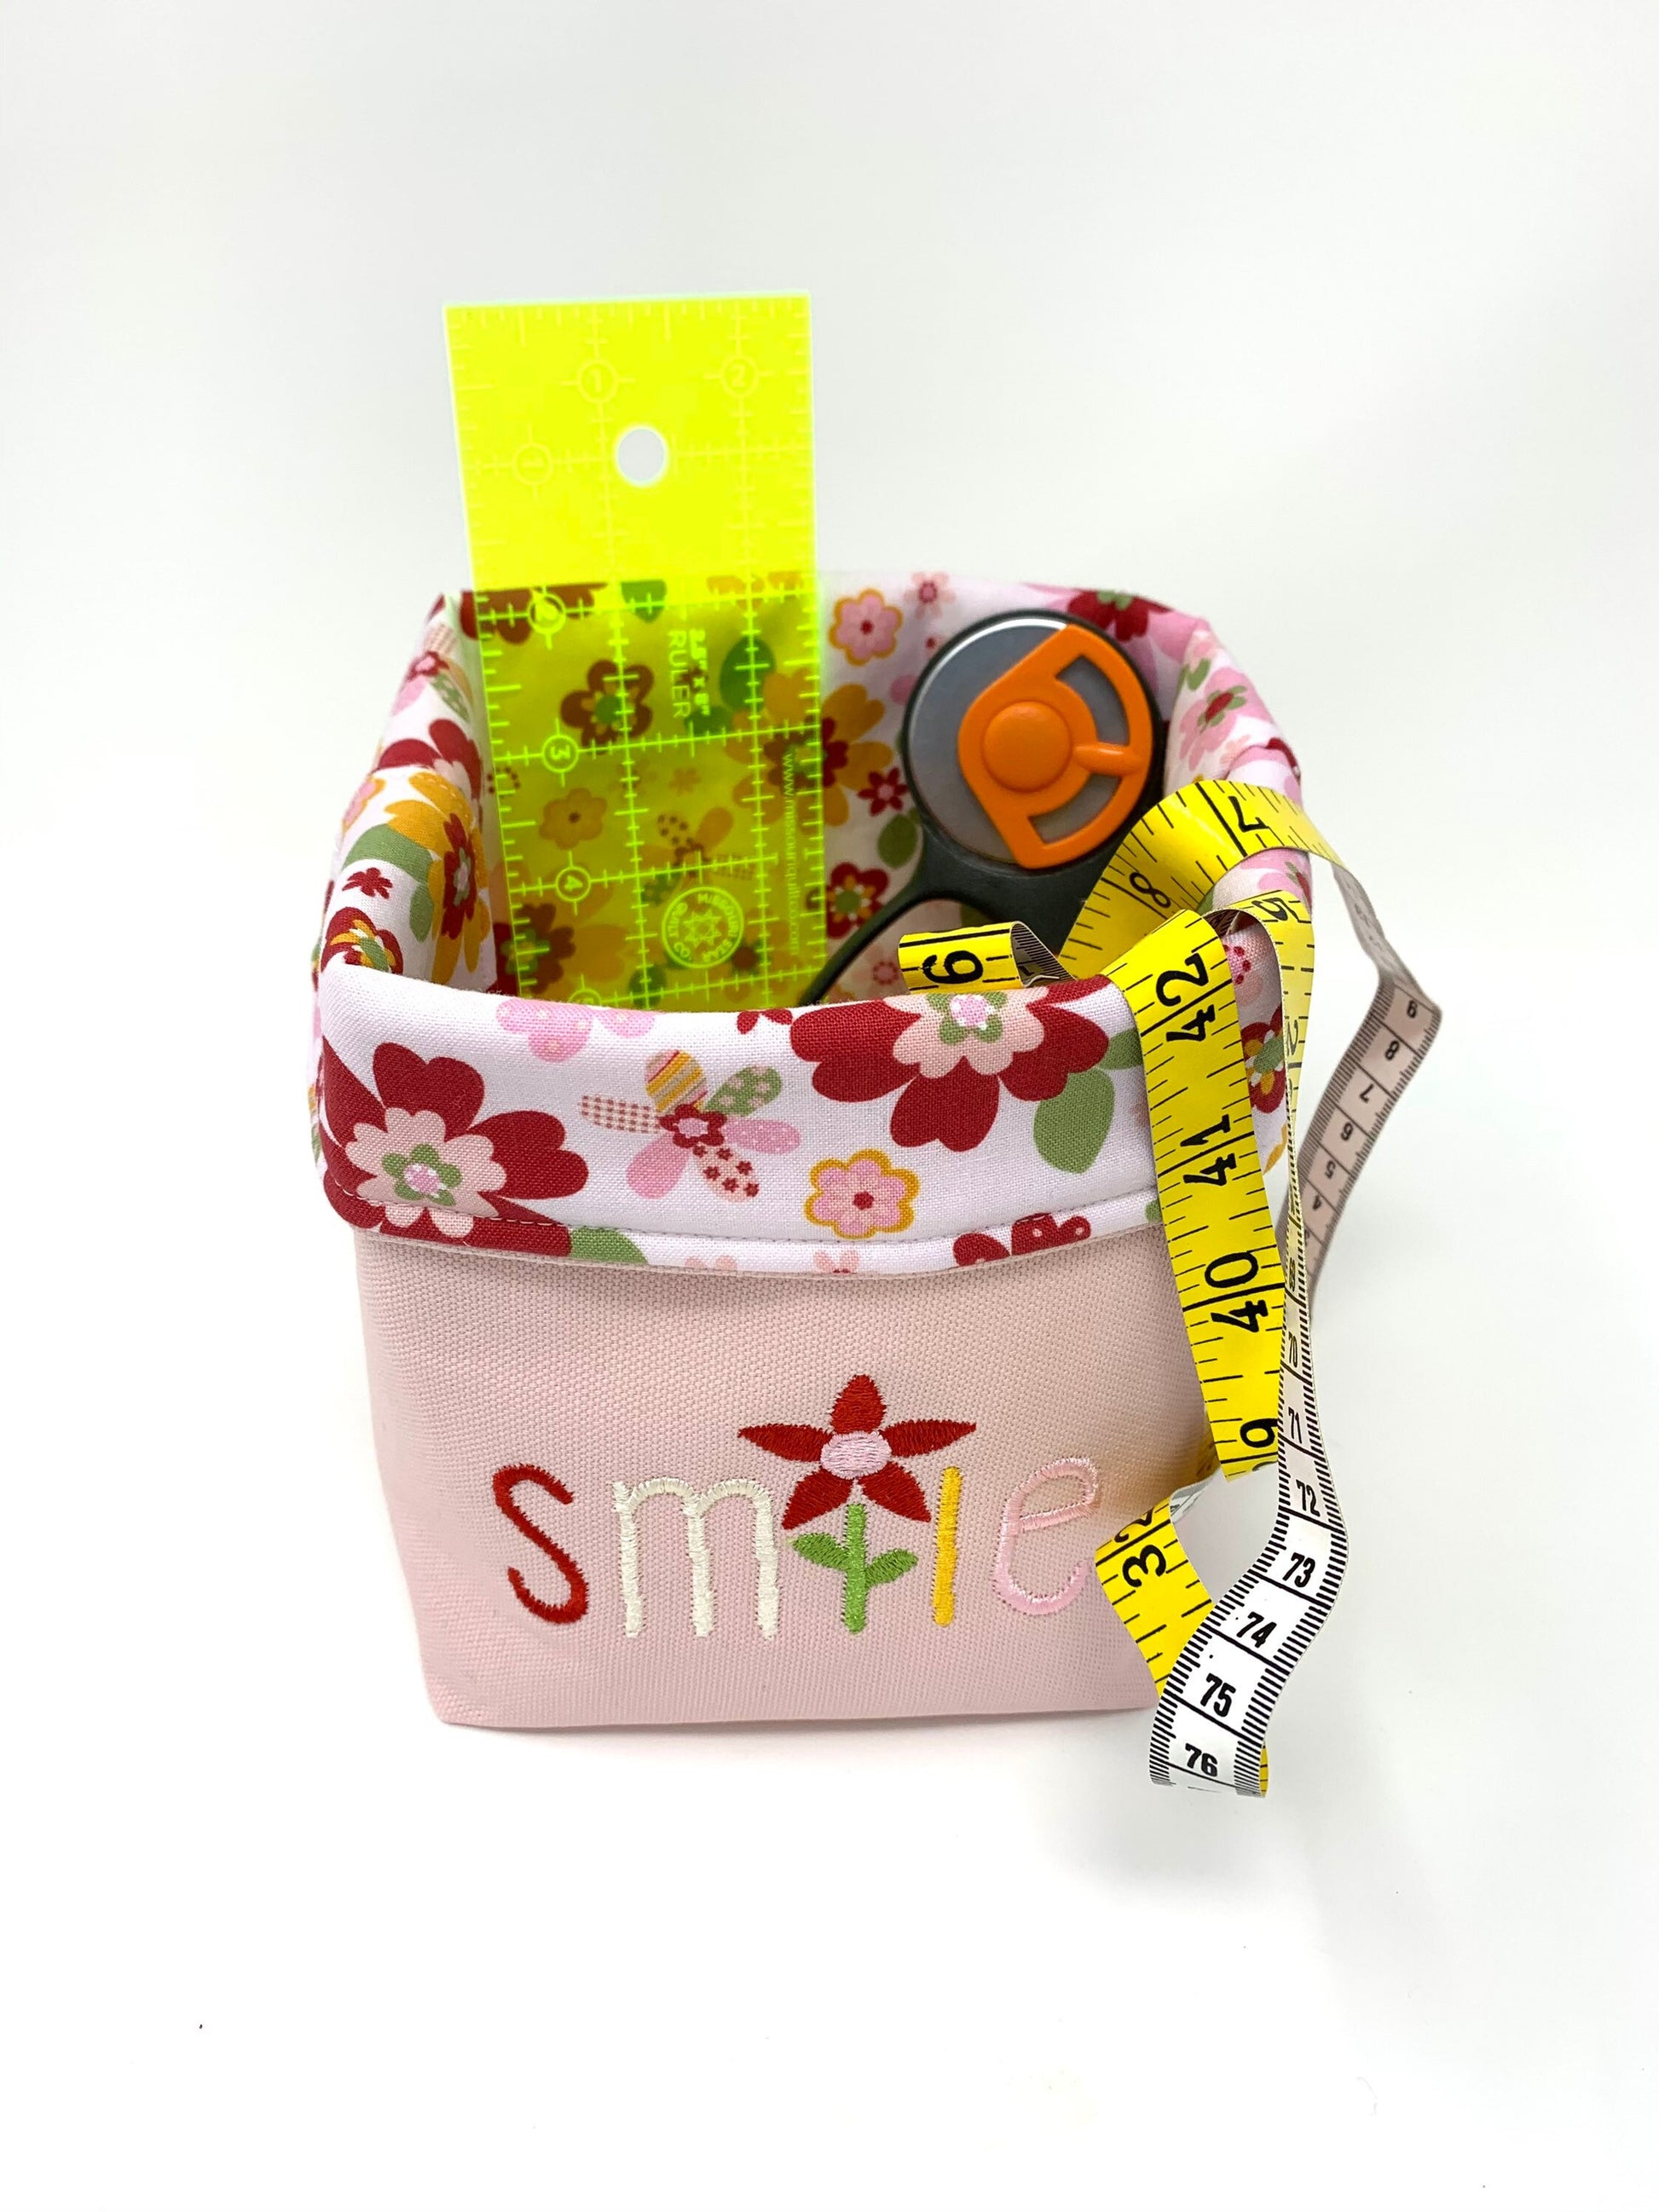 Fabric Bag, Basket, Reusable, Tissue Box Holder, Floral, Smile Basket, Red, Pink, Handmade